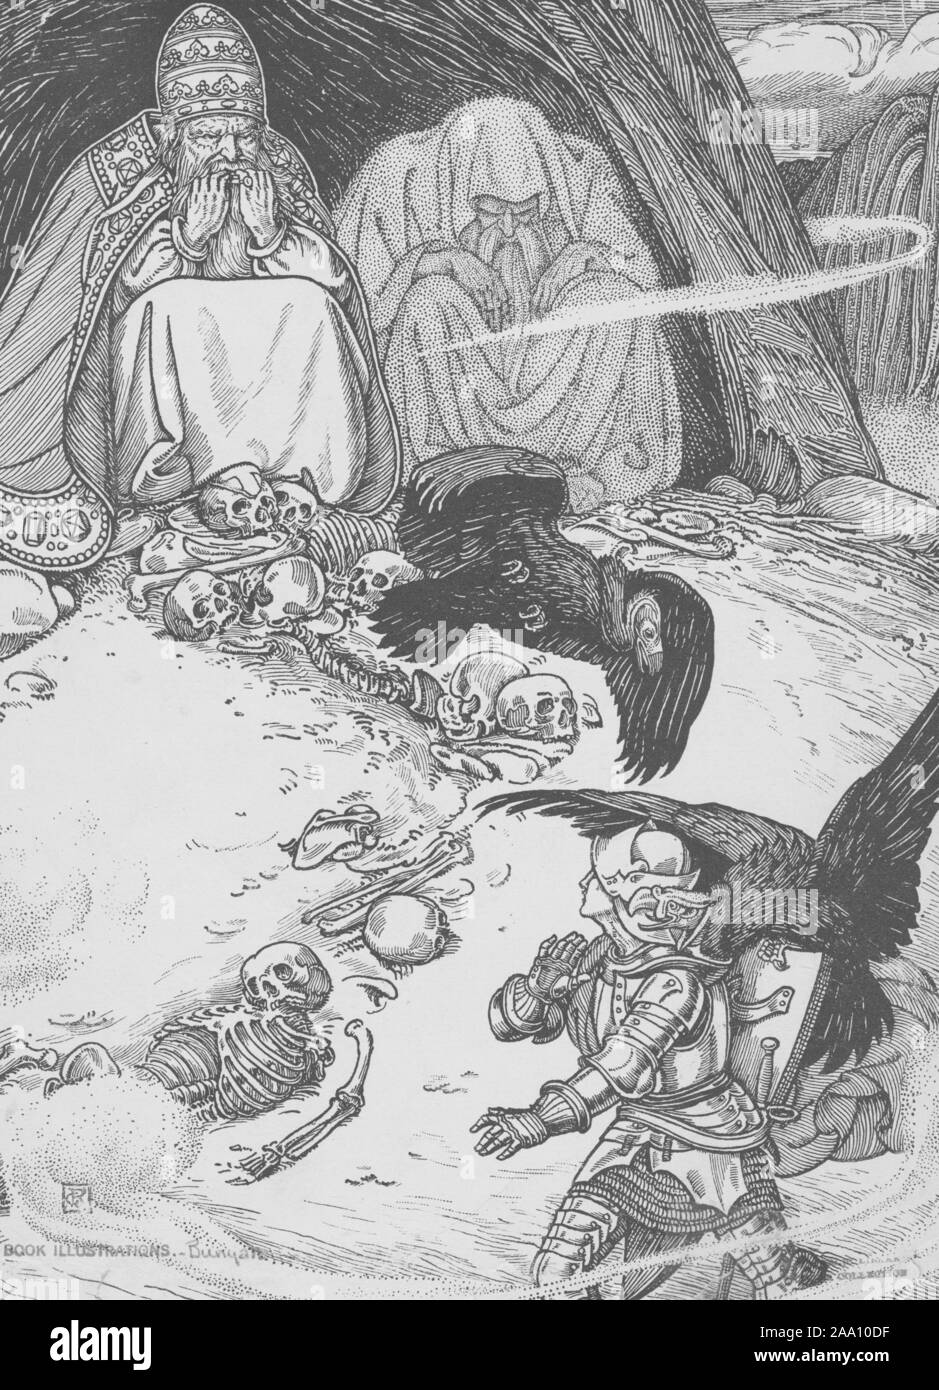 Gravure d'une scène du livre 'Pilgrim's Progress' de John Bunyan, avec Christian venir à travers une grotte avec deux géants, un Pape et un païen assis à l'intérieur, entouré par les squelettes et les vautours, illustré par George Rhead noté Woolliscroft, publiés par le Siècle Co, 1898. À partir de la Bibliothèque publique de New York. () Banque D'Images